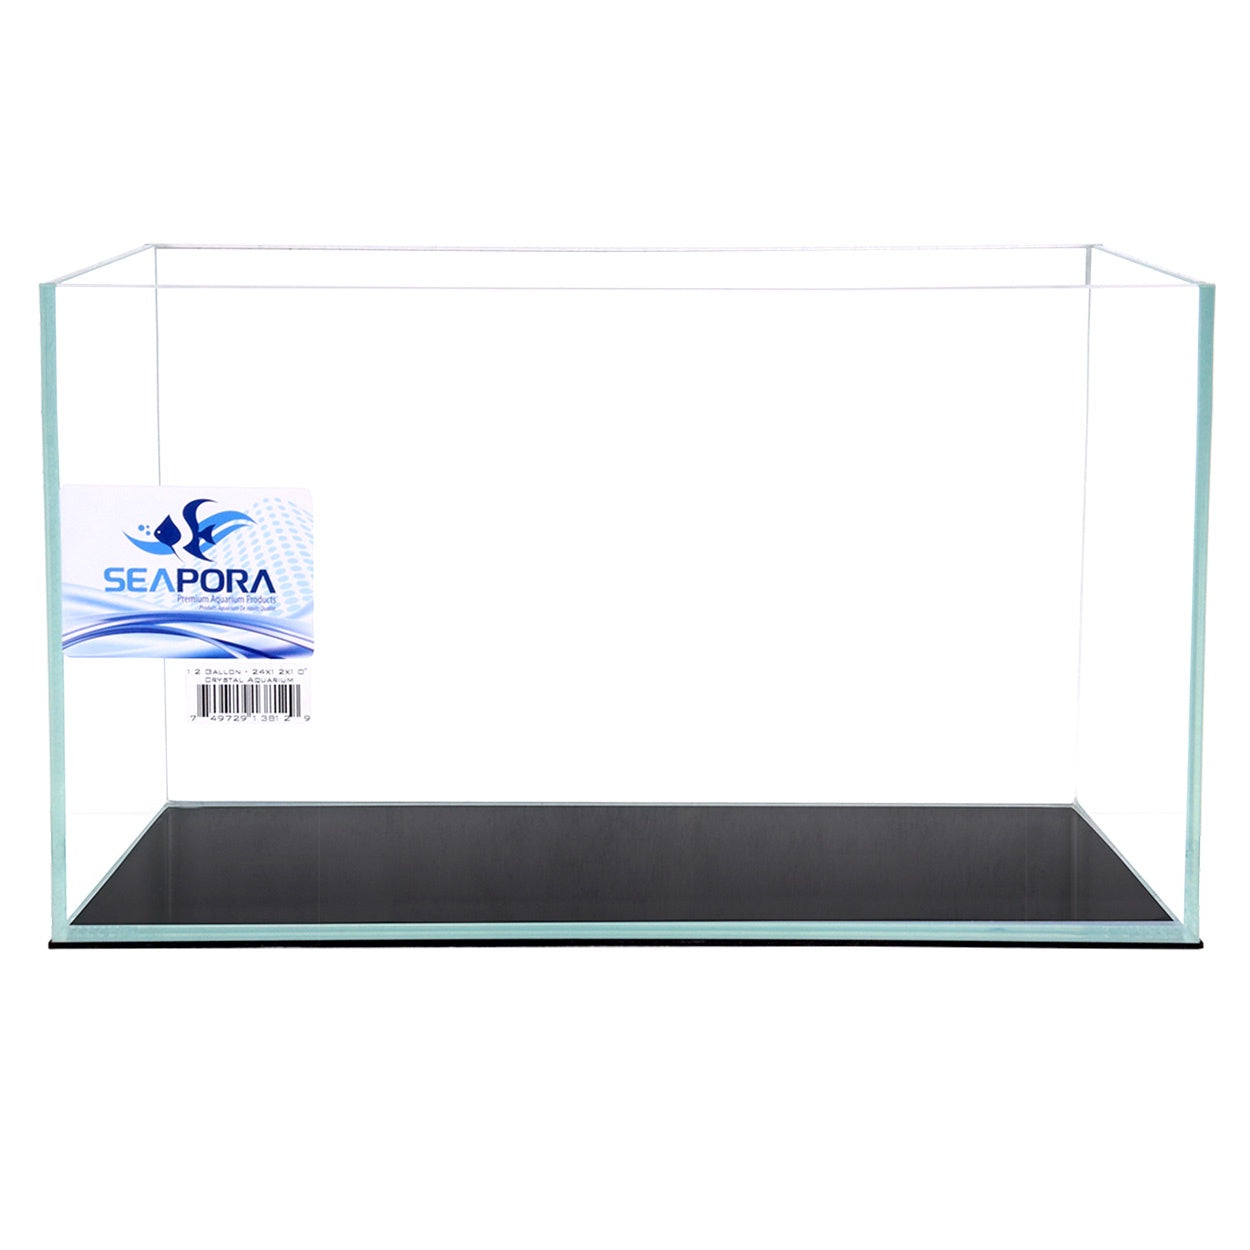 Seapora Crystal Series Aquarium - 9 Gallon